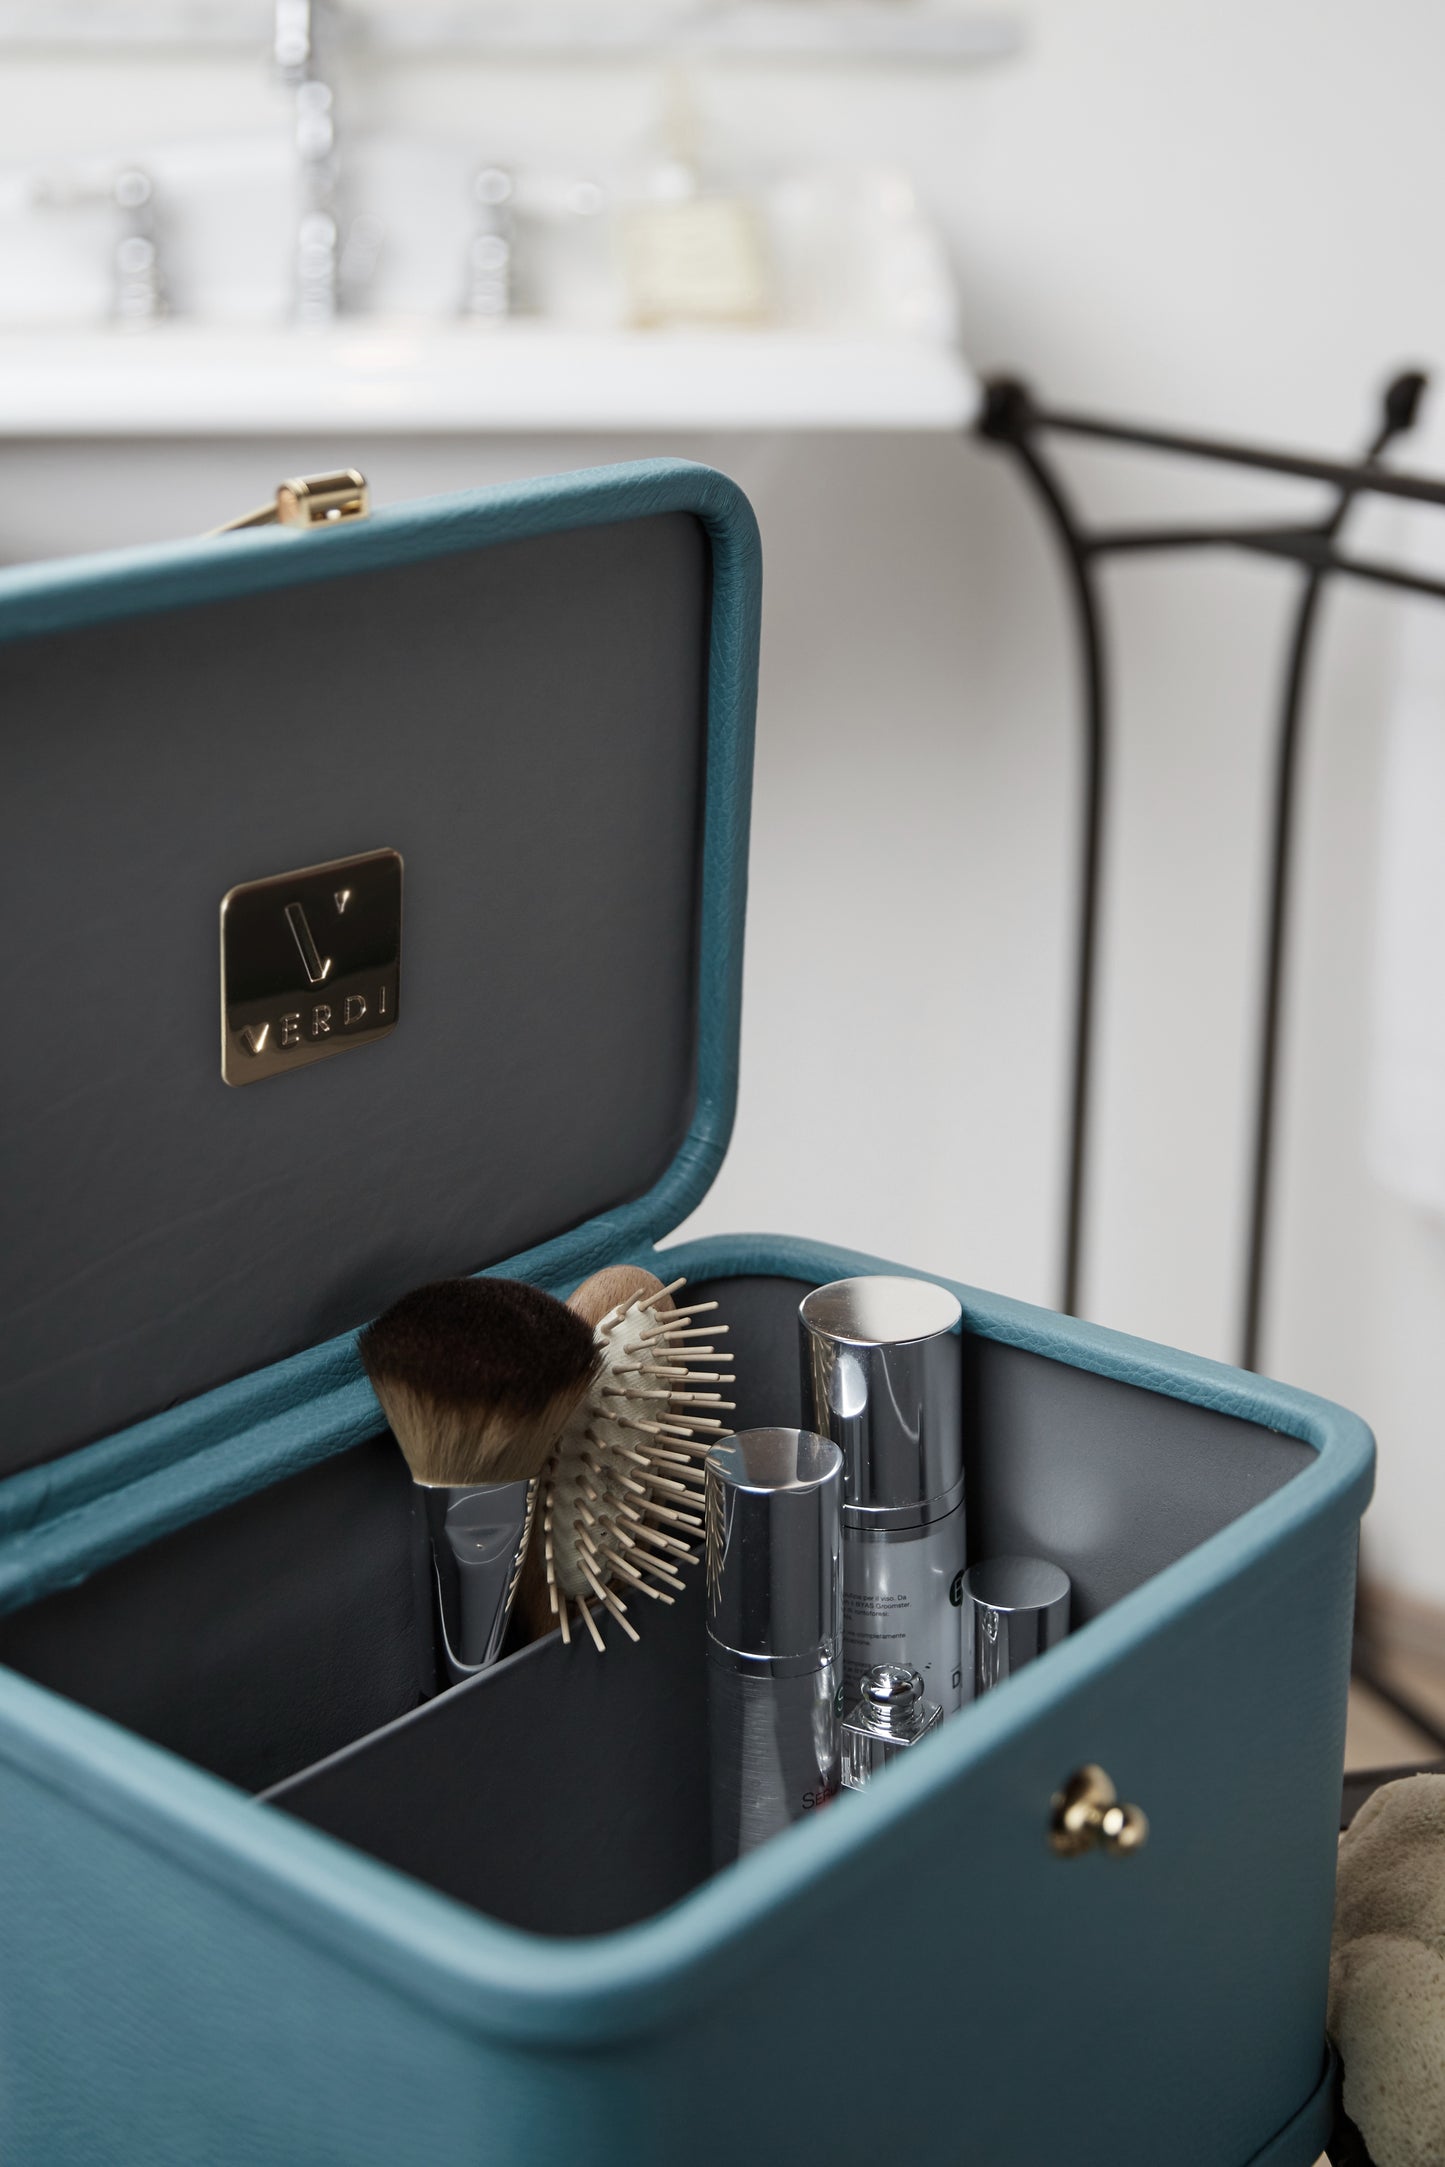 Atelier Verdi teal topaz small Livia vanity case with cosmetics